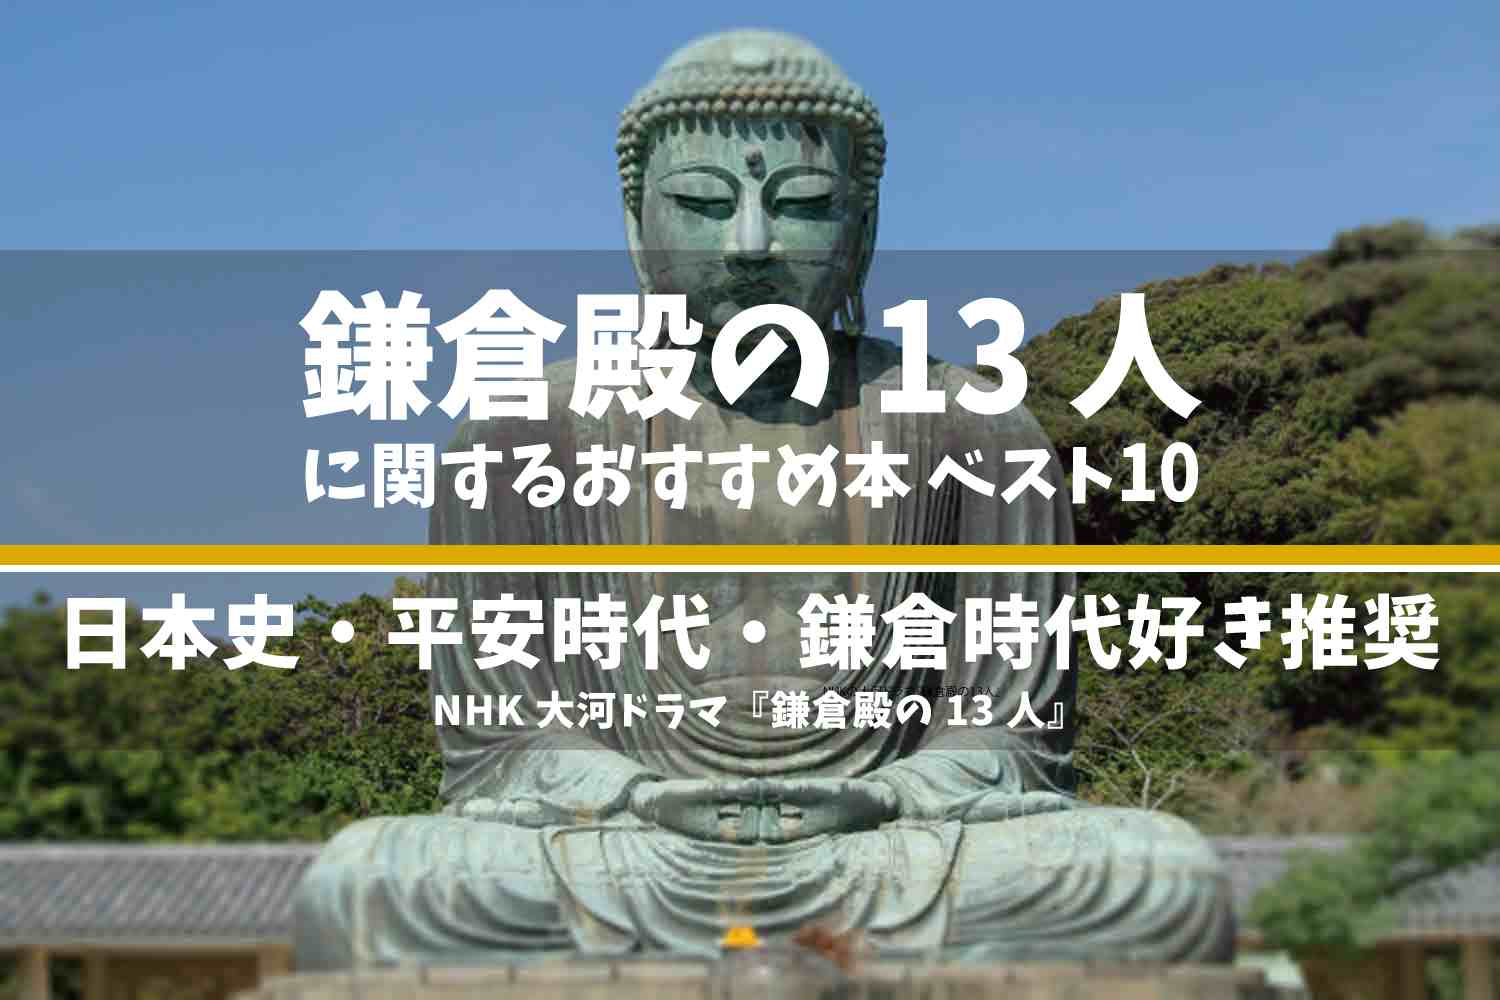 NHKの大河ドラマ『鎌倉殿の13人』 おすすめ 本 ランキング ベスト10